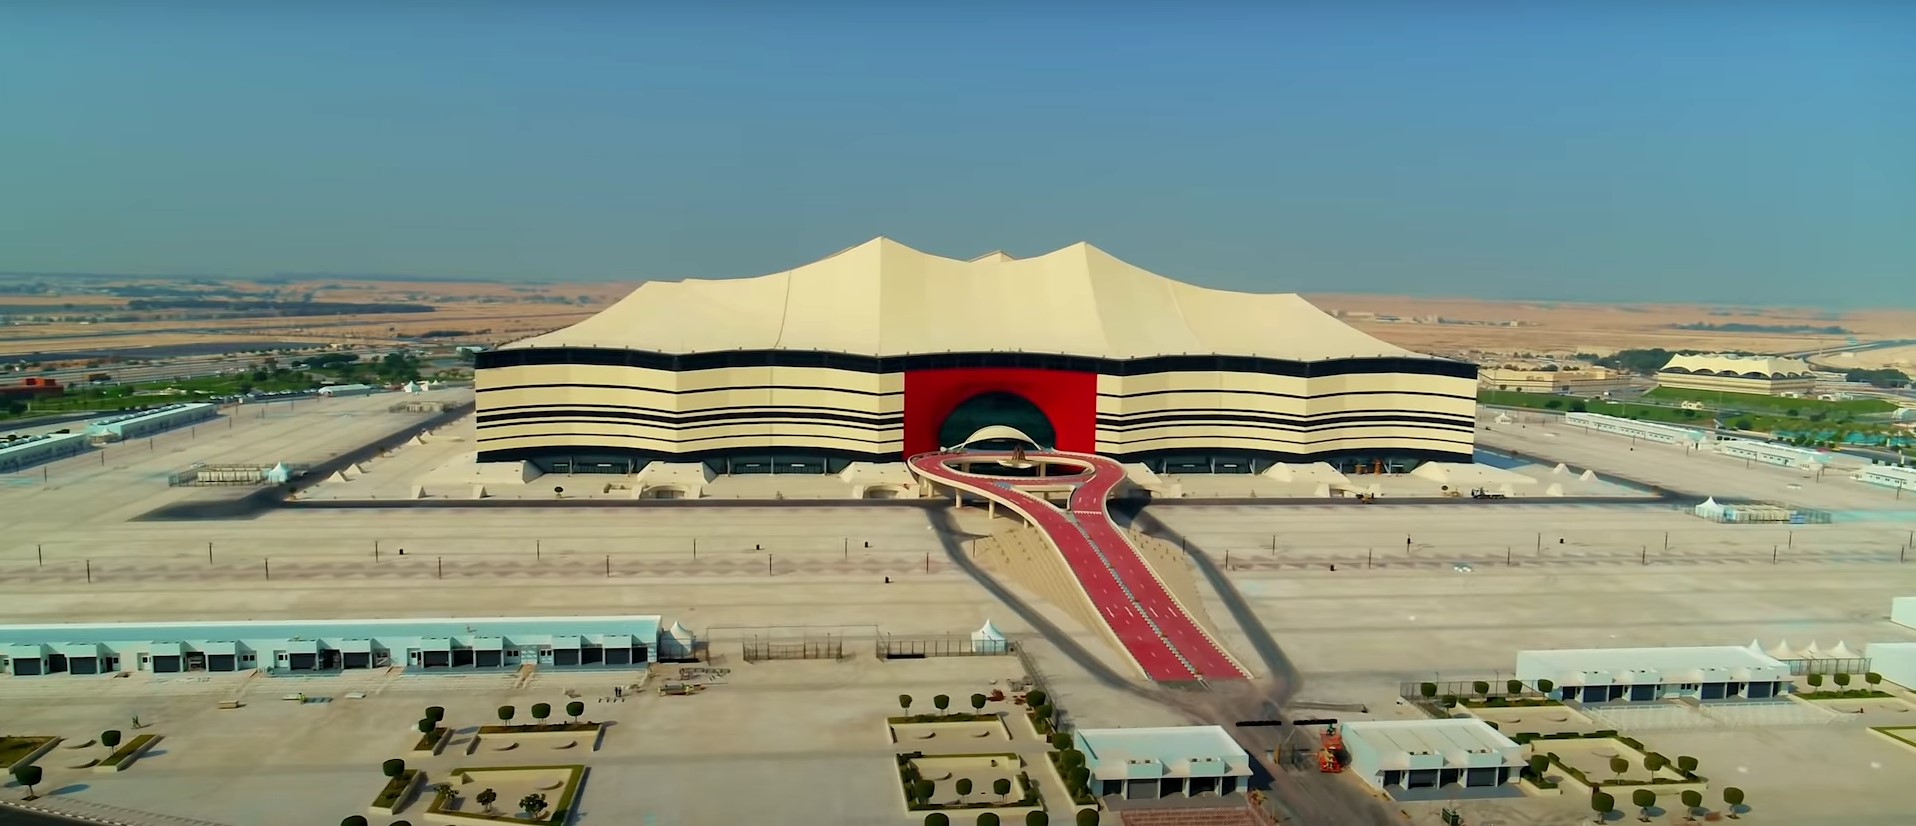 Qatar’s lavish World Cup Stadiums